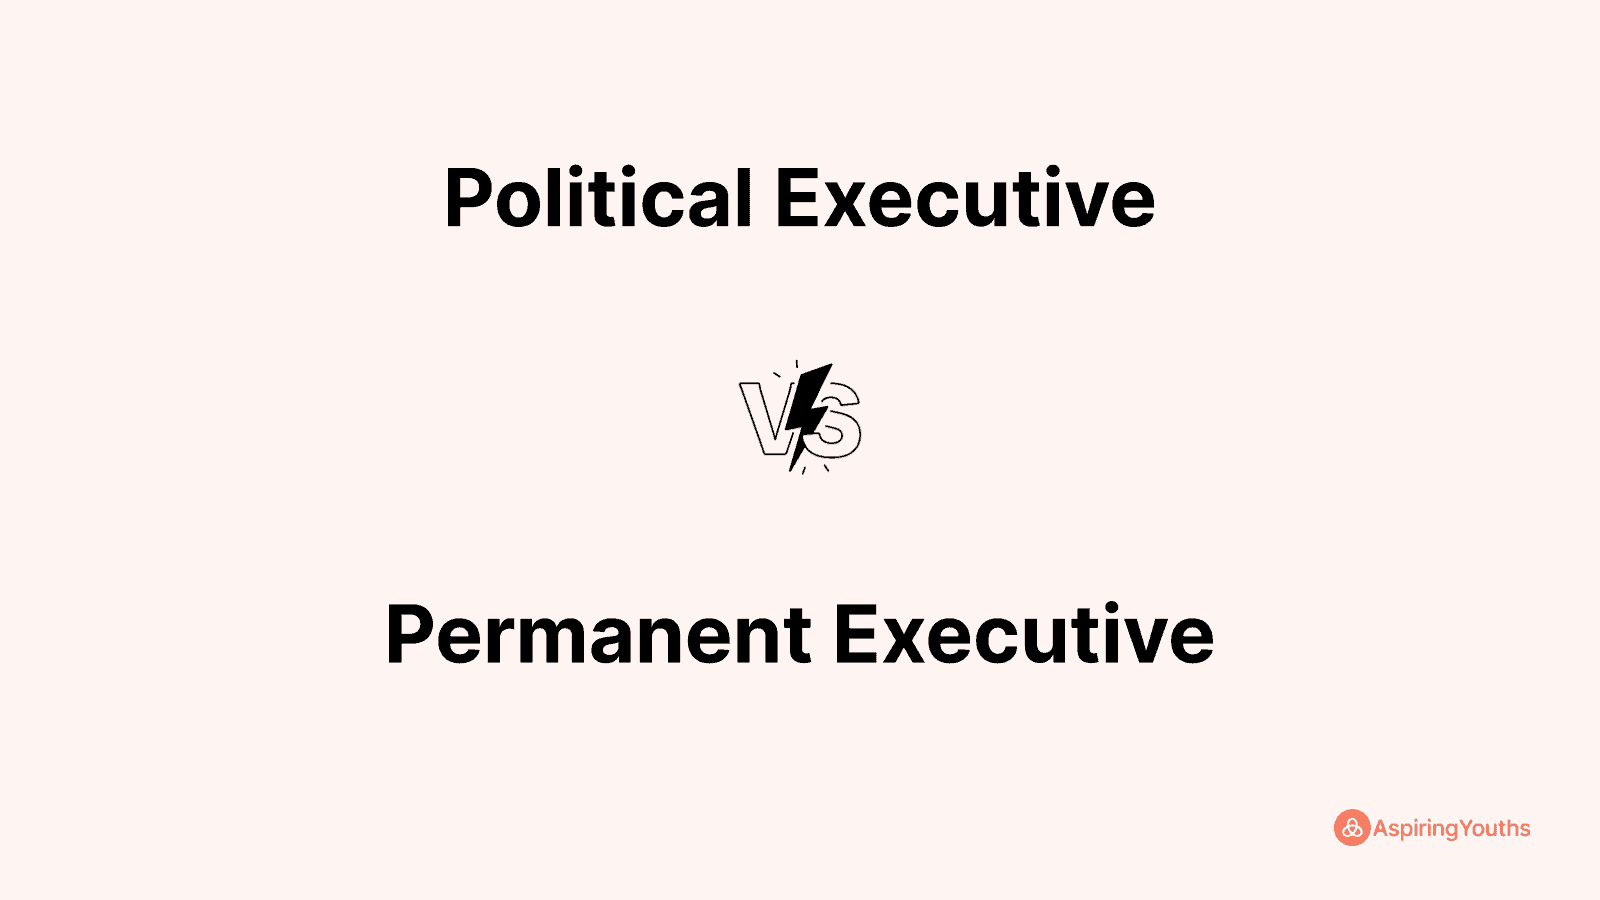 Political Executive vs Permanent Executive